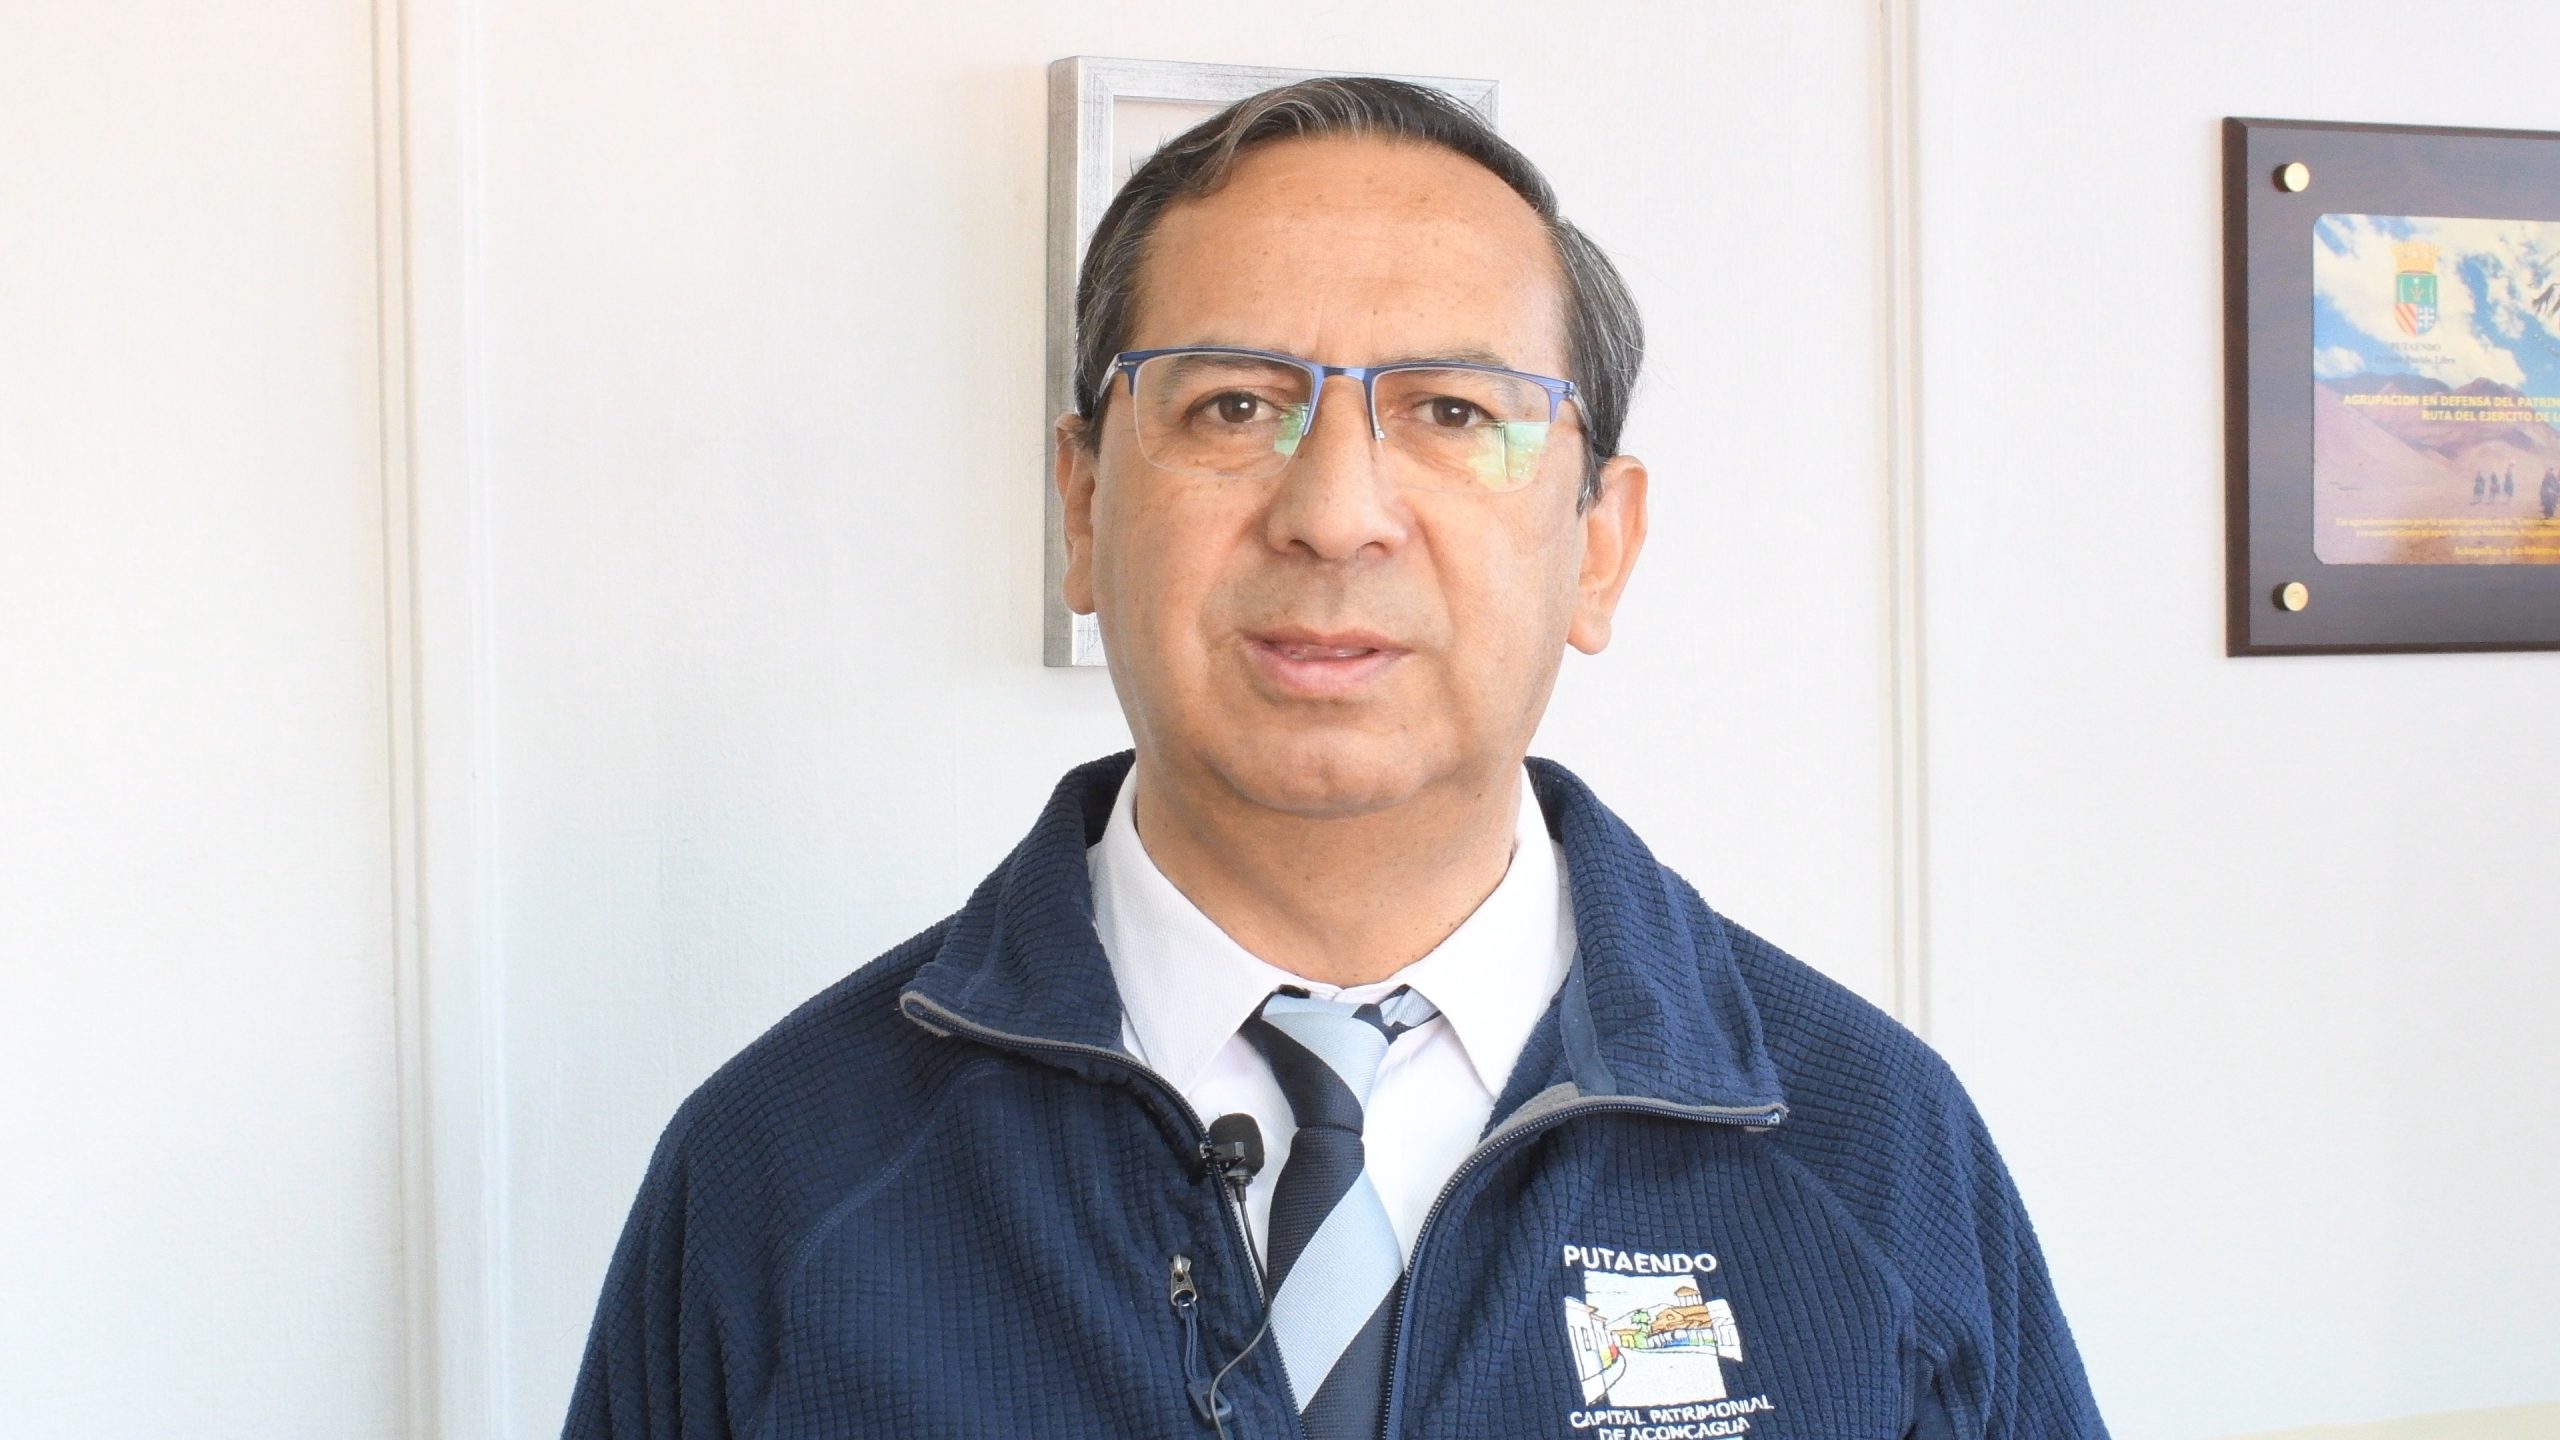 PUTAENDO: El Alcalde Mauricio Quiroz desmiente tajantemente que esté a favor de eliminar la “Zona Típica” del centro de Putaendo